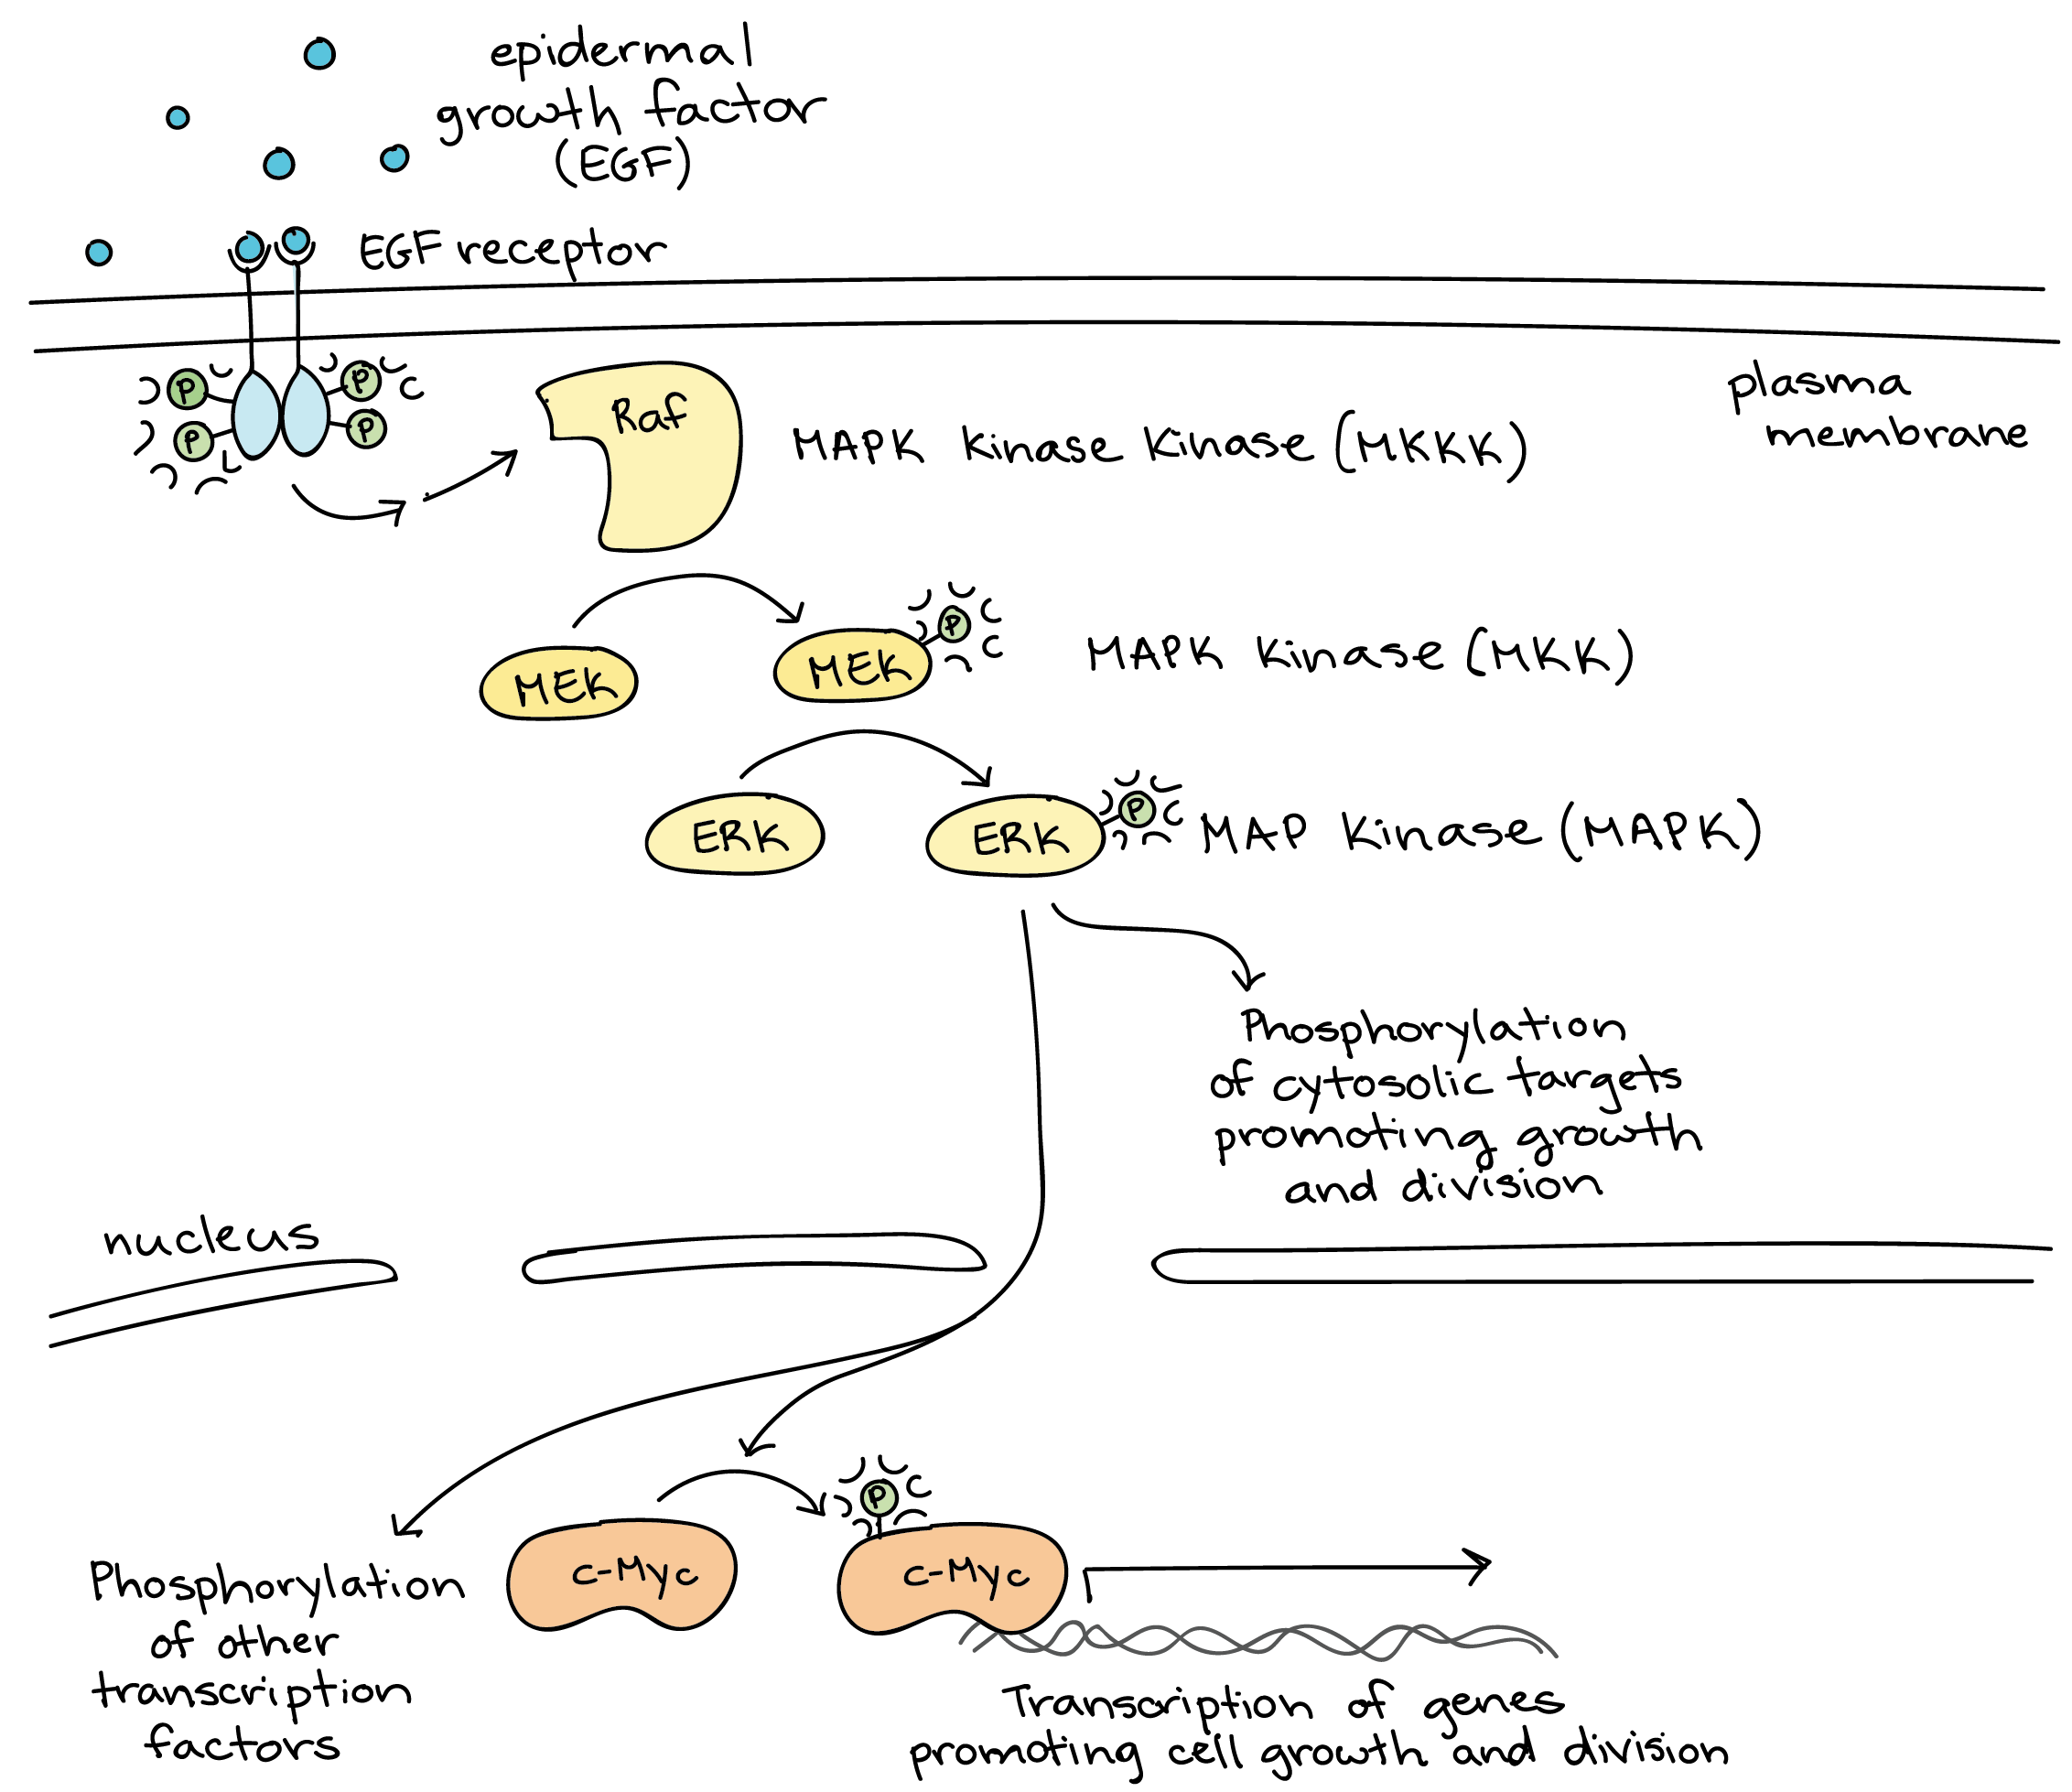 calcium and ip3 in signaling pathways